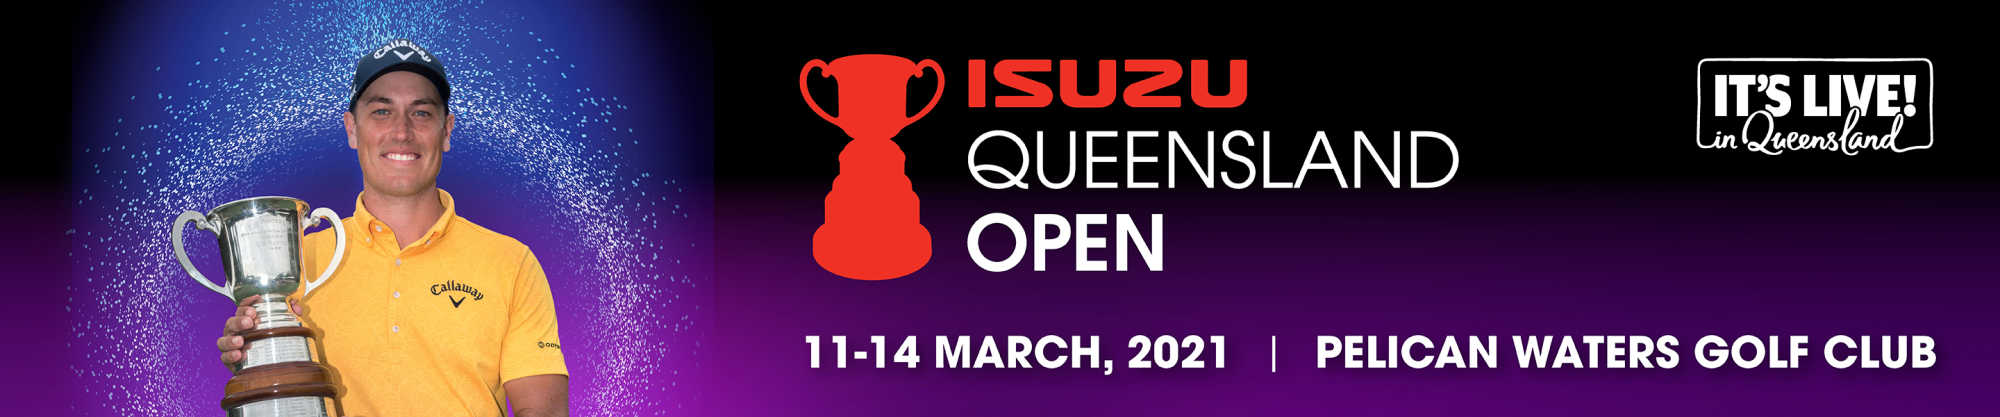 2021 Isuzu Queensland Open